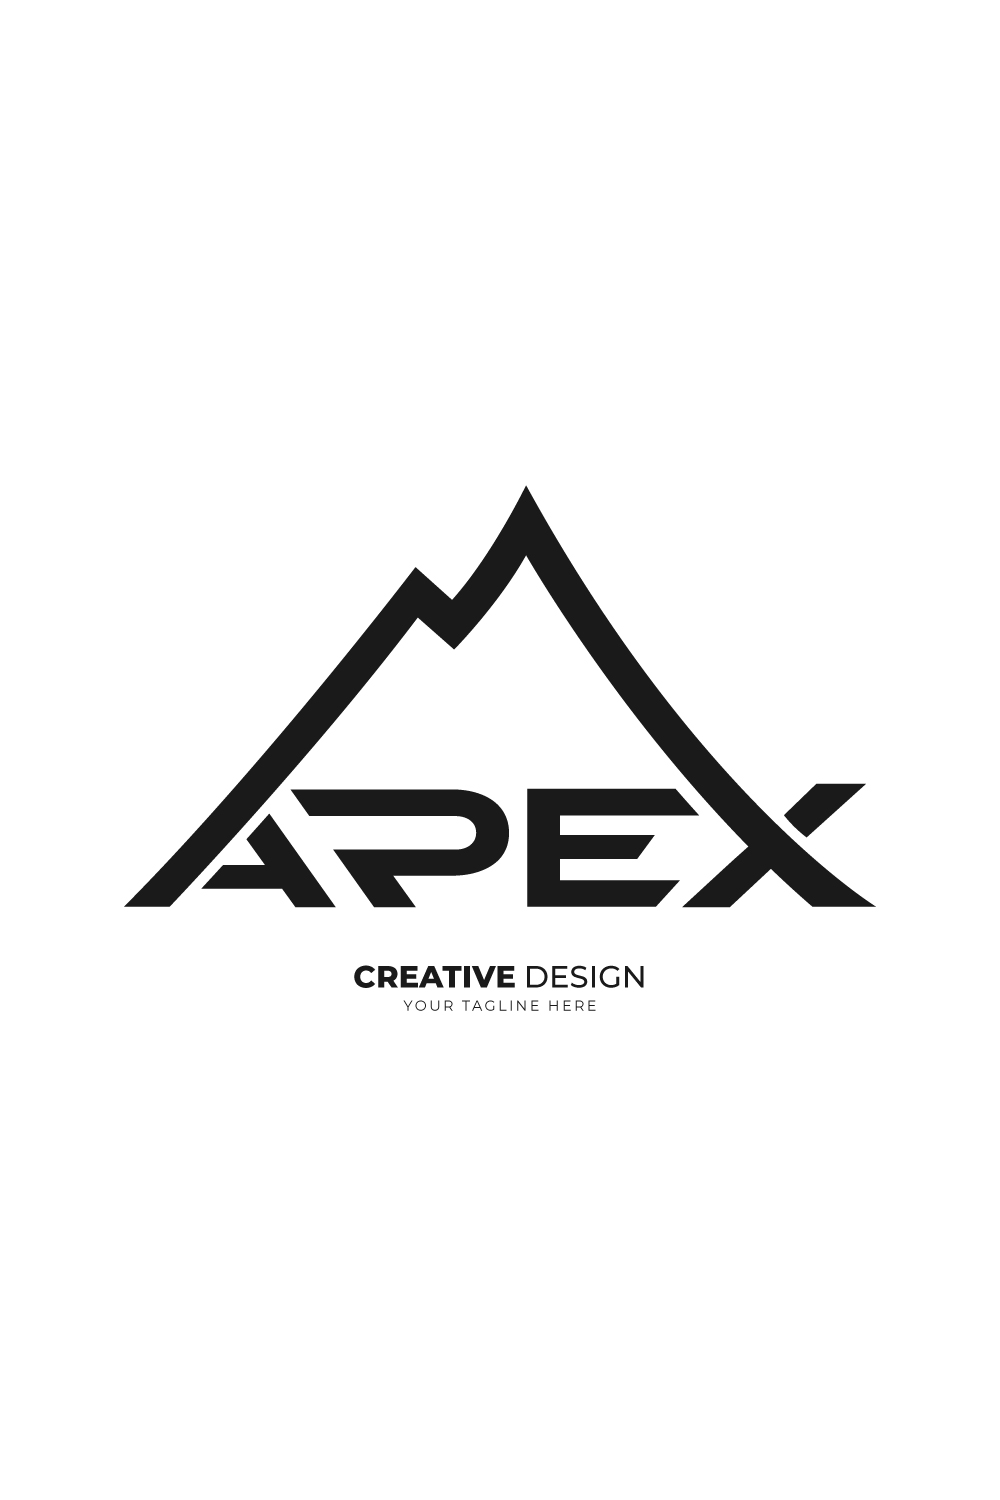 Apex Mountain logo pinterest preview image.